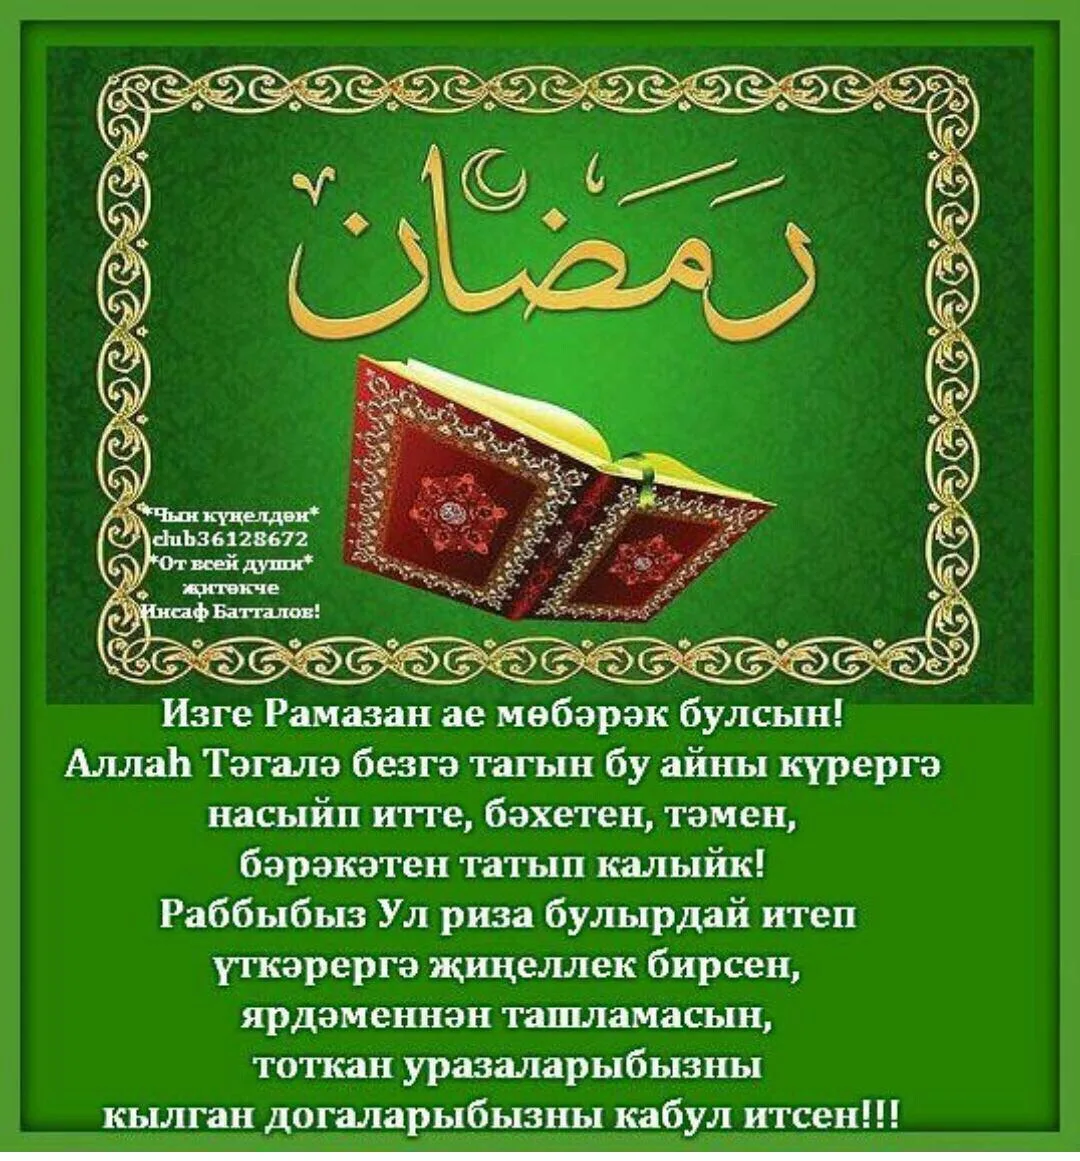 Ураза догалары укырга. Поздравления с татарскими праздниками. Ураза байрам. Поздравление с кража байран. Ураза-байрам поздравления.